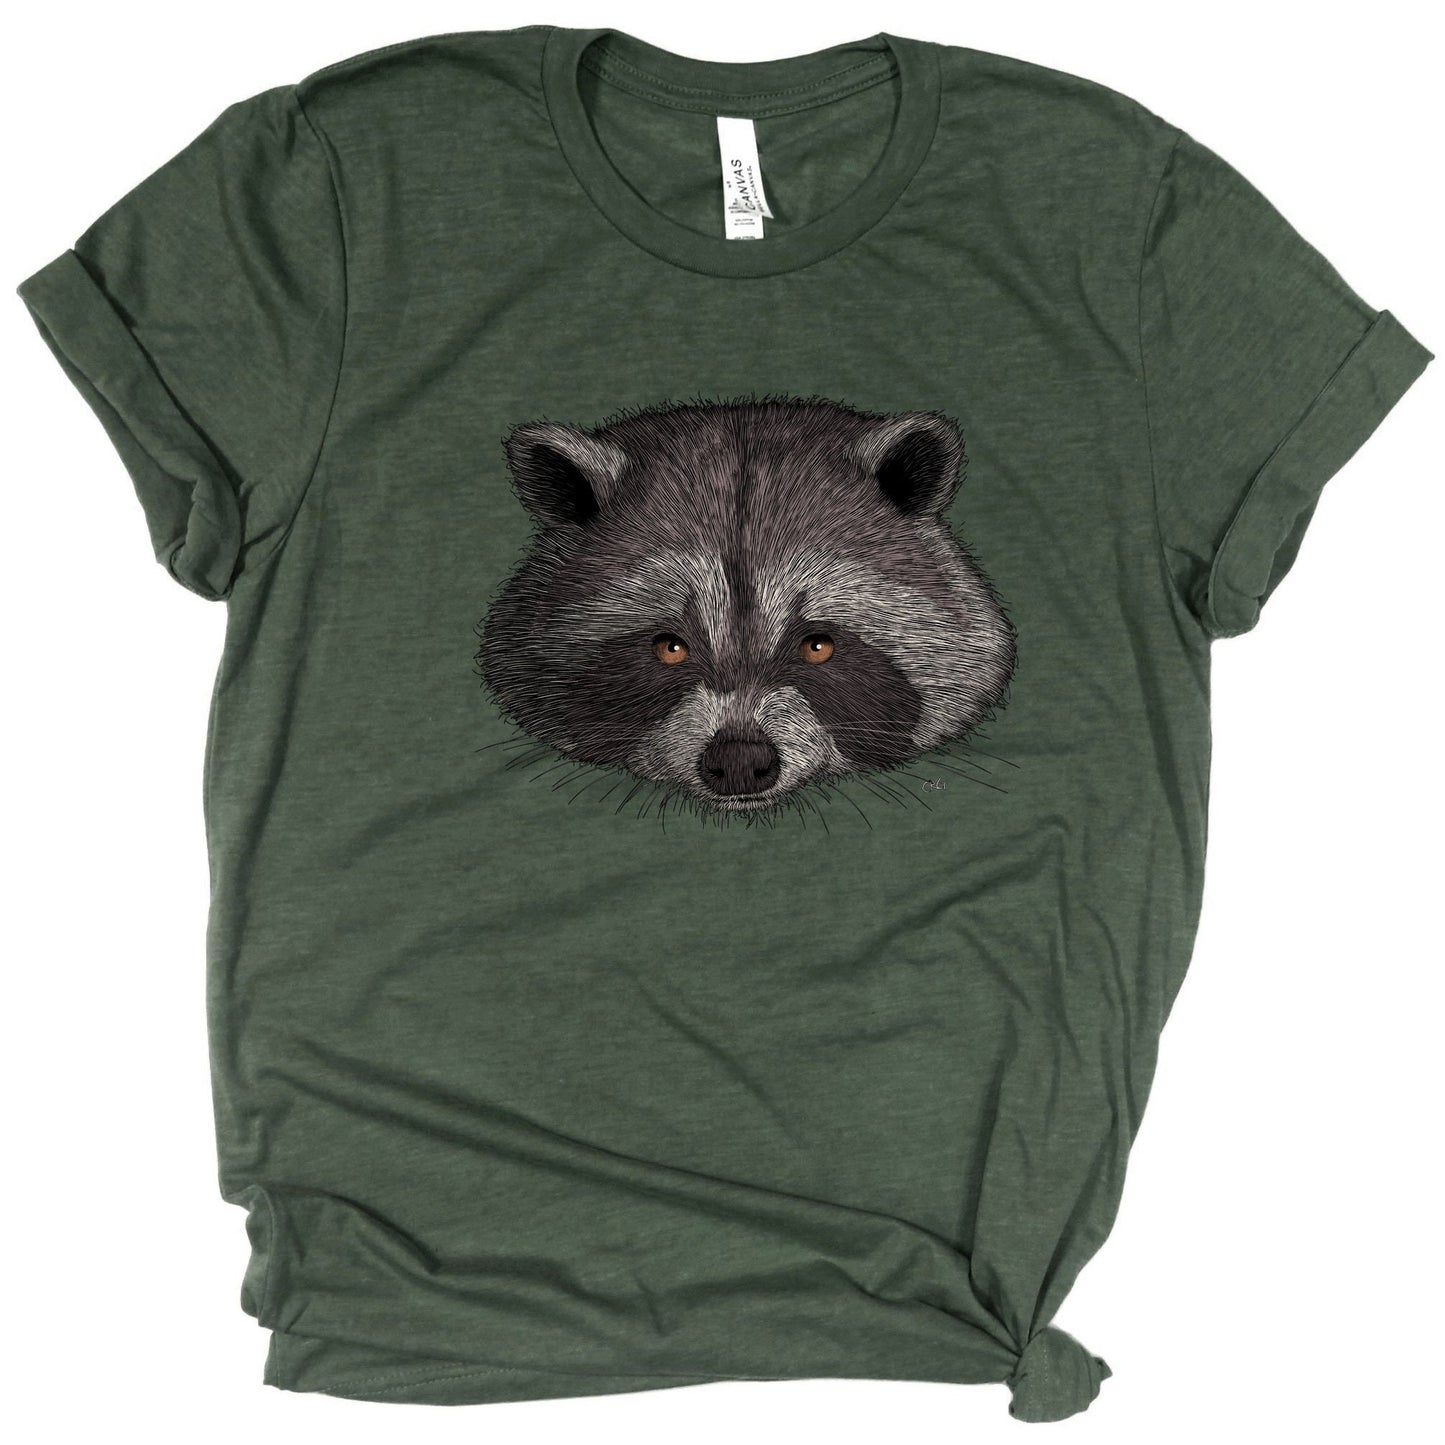 Raccoon Shirt